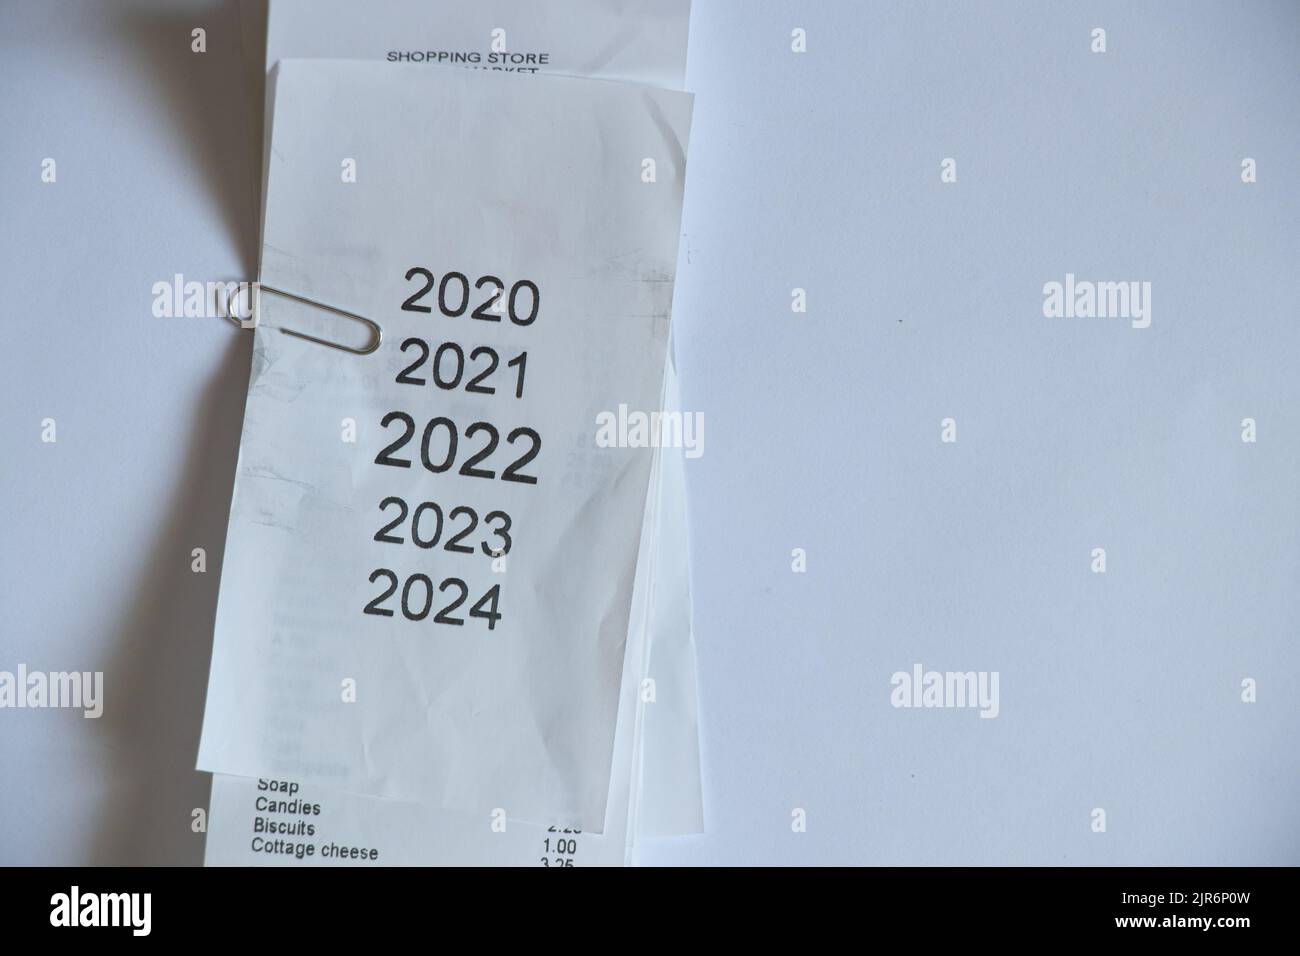 Jahre in der Checkliste 2020,2021,2022,2023 als Liste der auf Schecks gedruckten Jahre, Neujahr 2022 auf Papier als Hintergrund, eine Liste mit einer Liste der Jahre Stockfoto